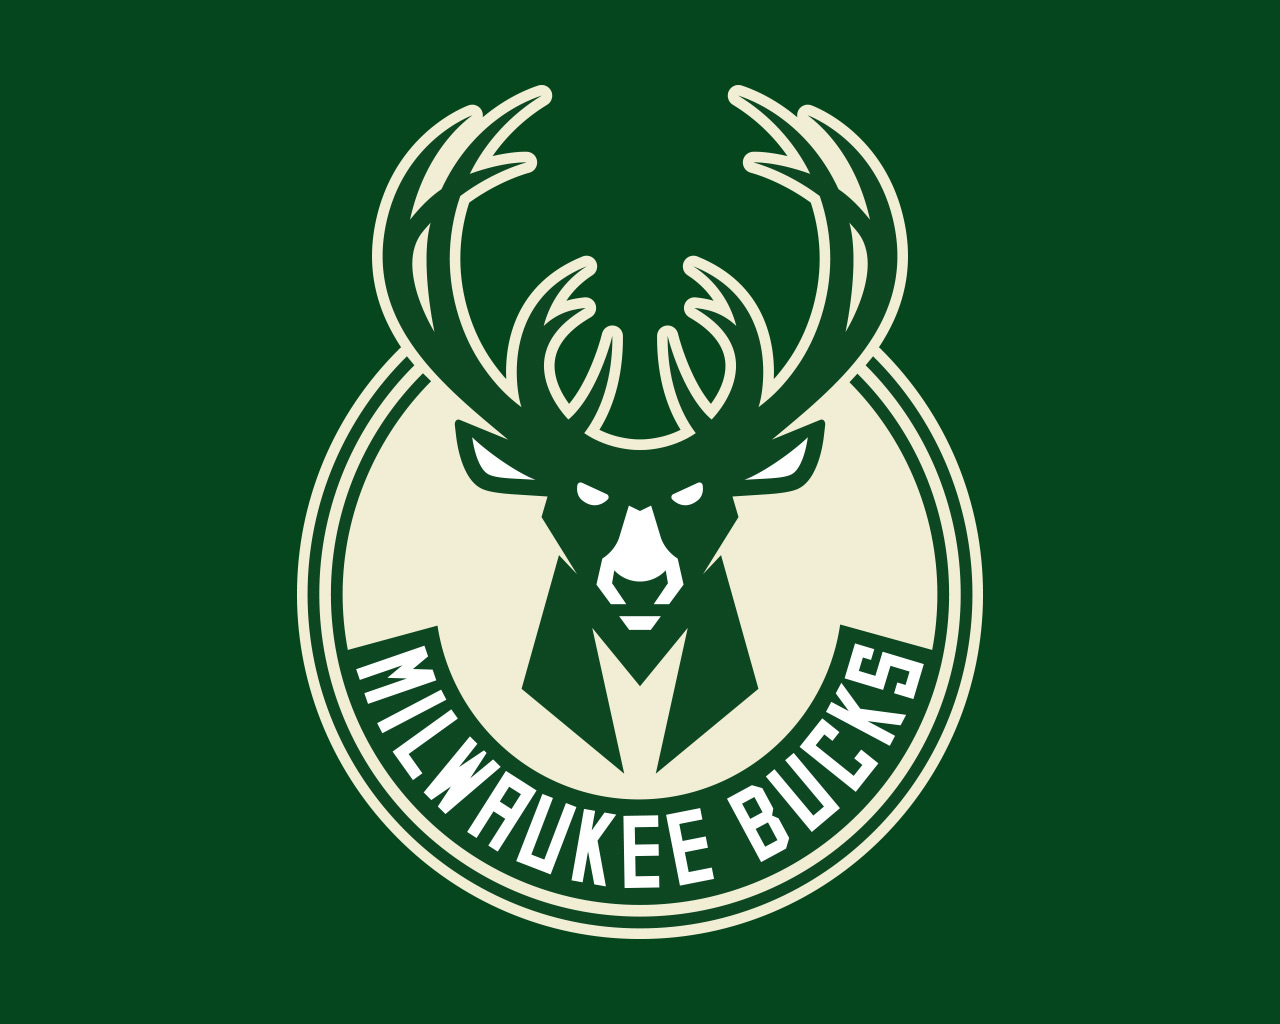 Milwaukee Bucks Logo 2019 , HD Wallpaper & Backgrounds